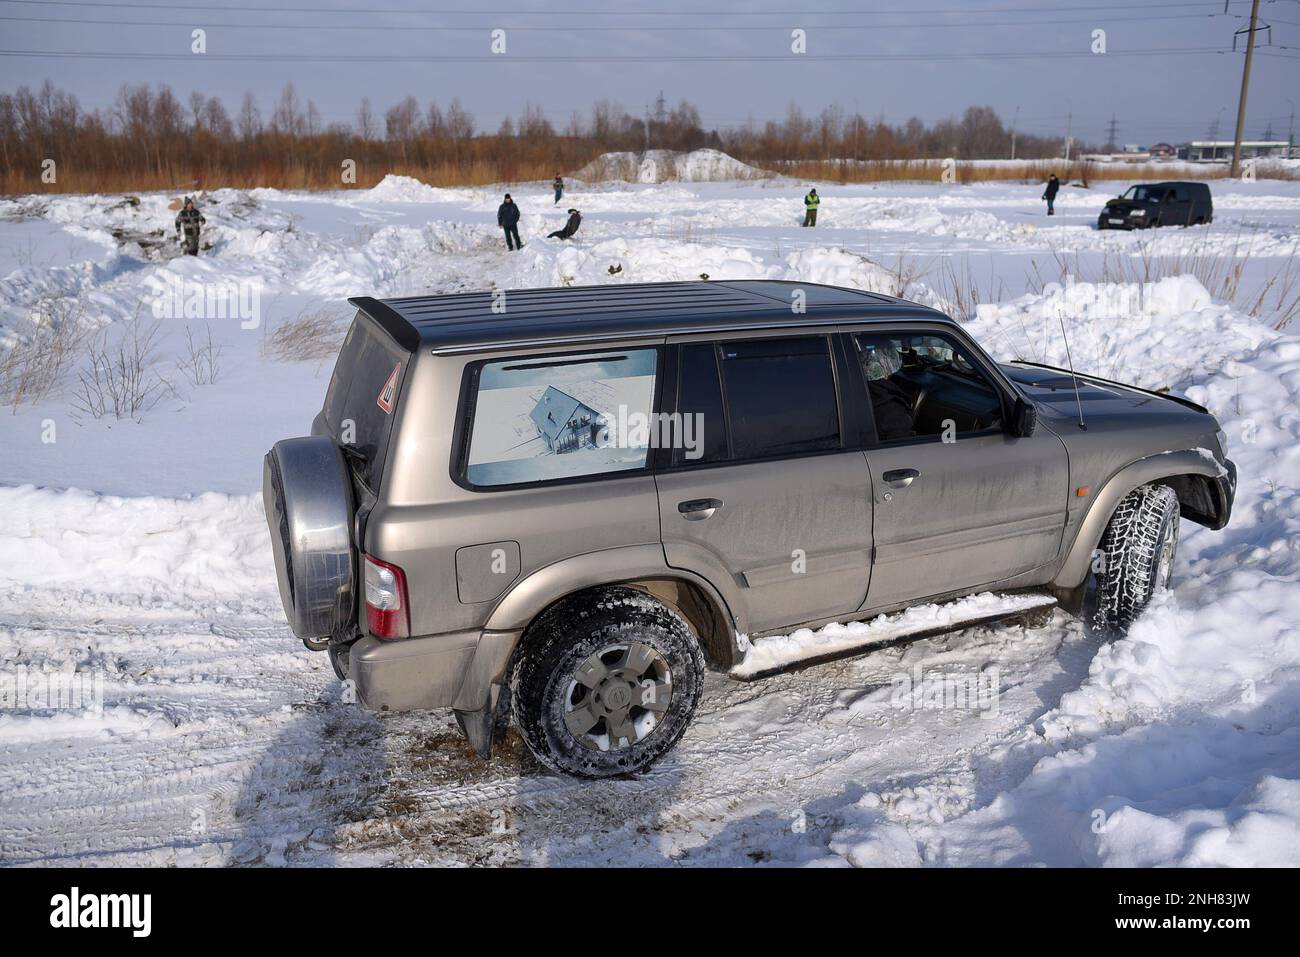 Le 4x4 de patrouille Nissan se déplace rapidement dans le champ de neige en hiver avec un passager souriant et souriant. Banque D'Images